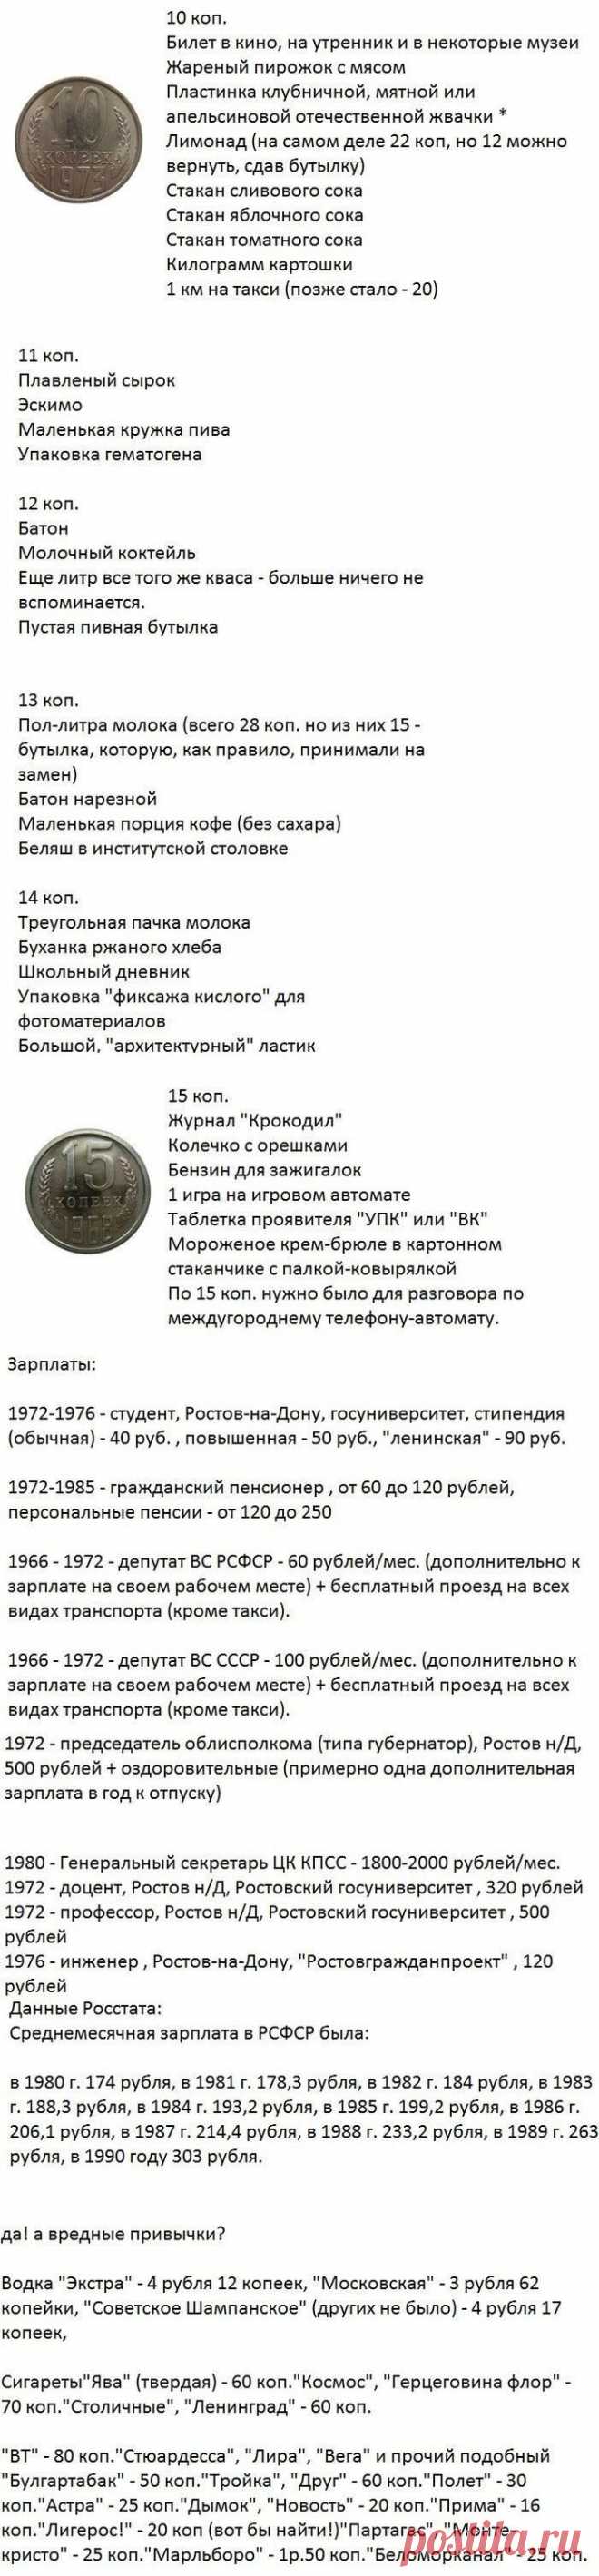 Цены в Советском Союзе / Назад в СССР / Back in USSR